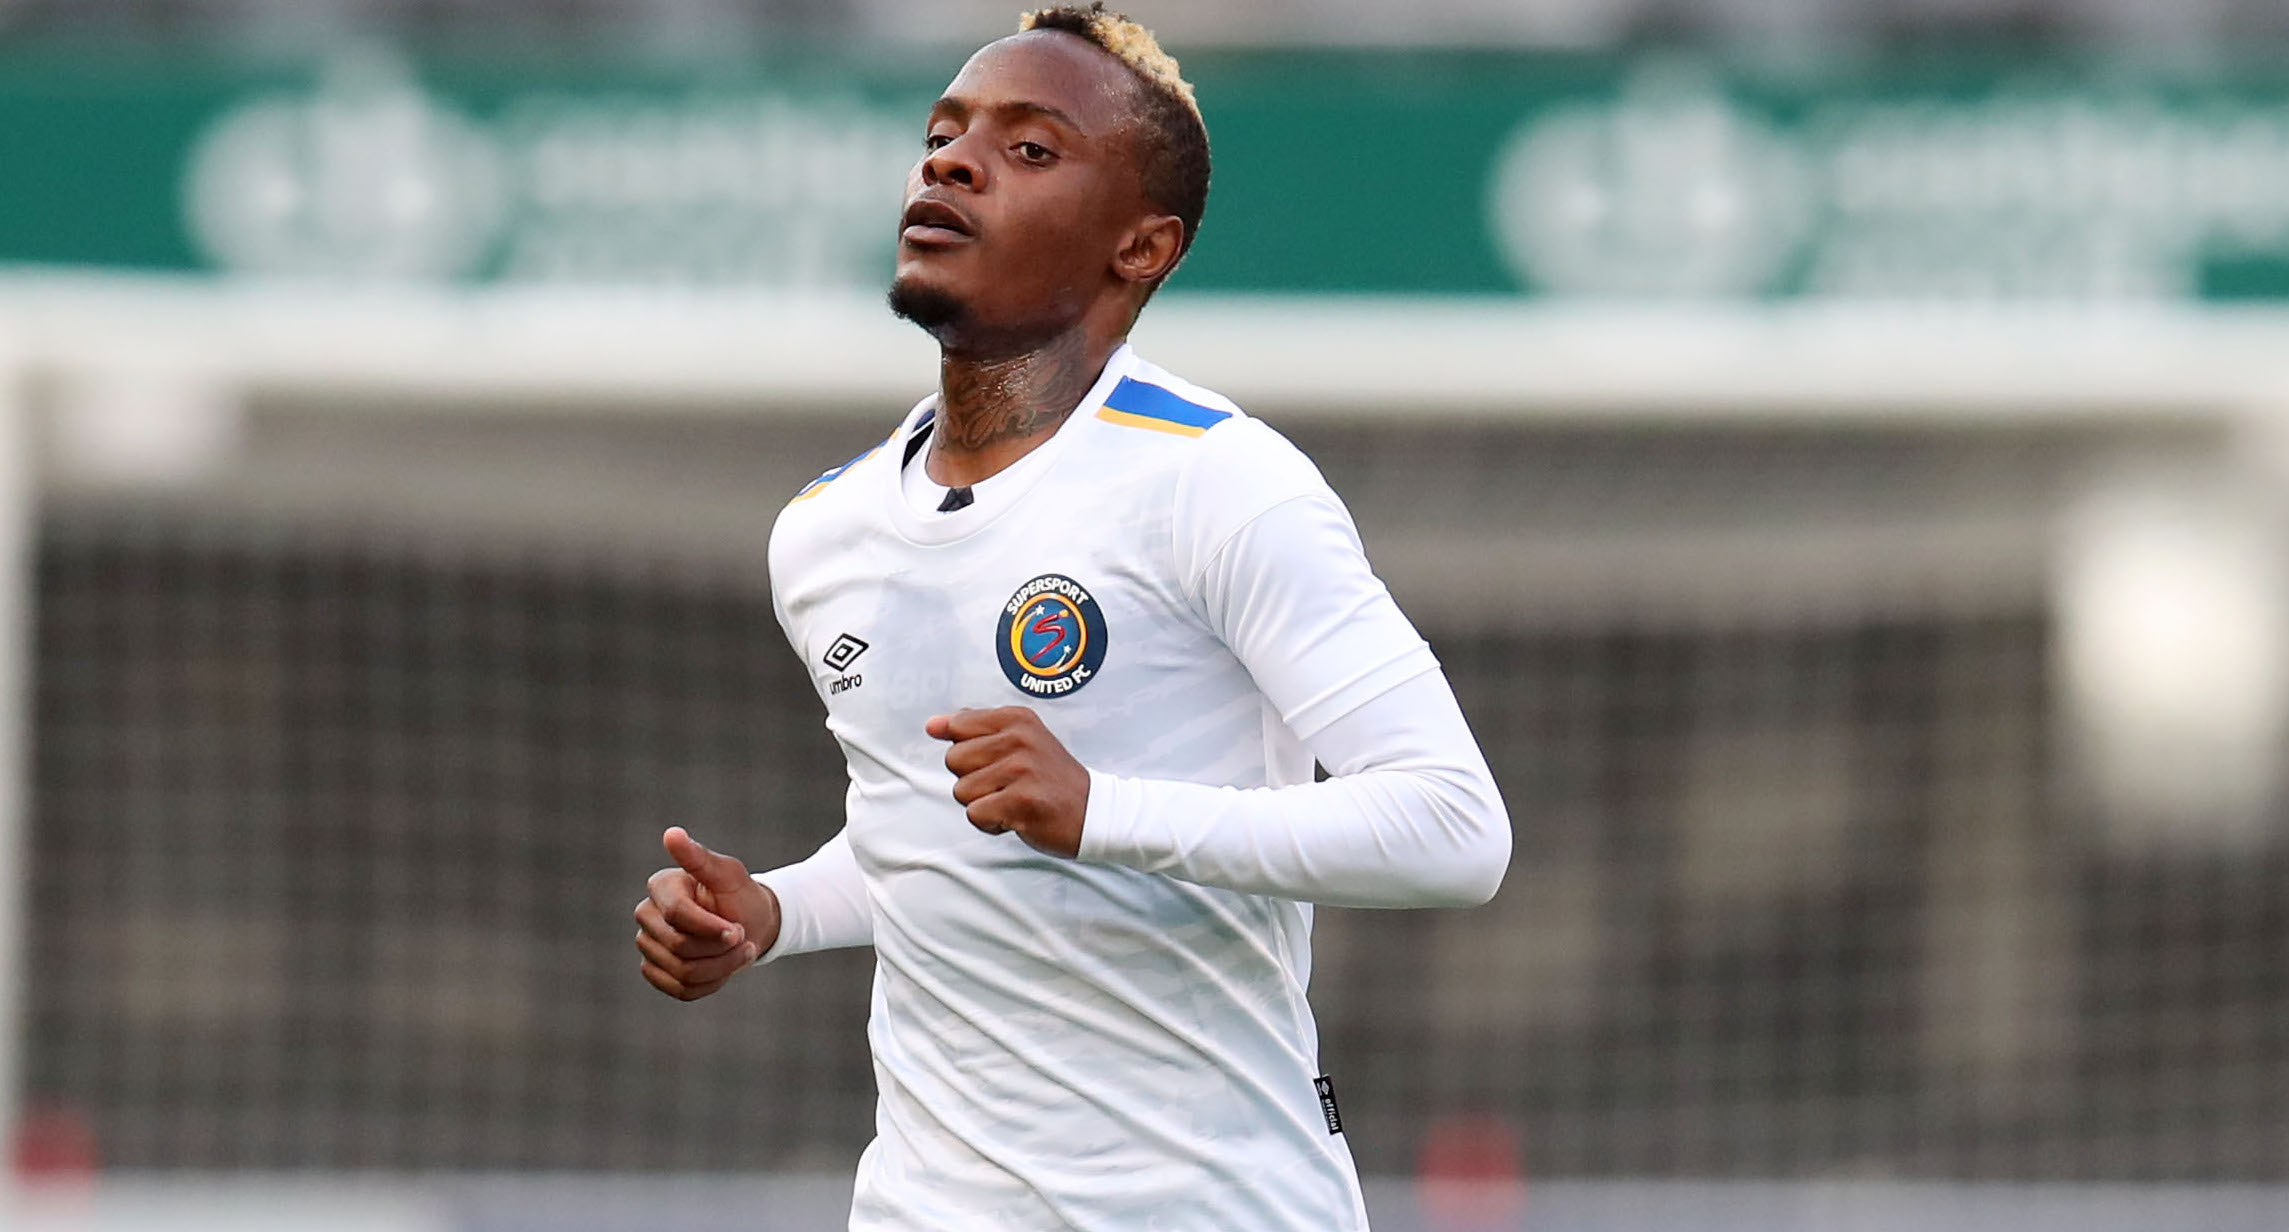 Kuda Mahachi close friend says footballer’s son was injured in SA